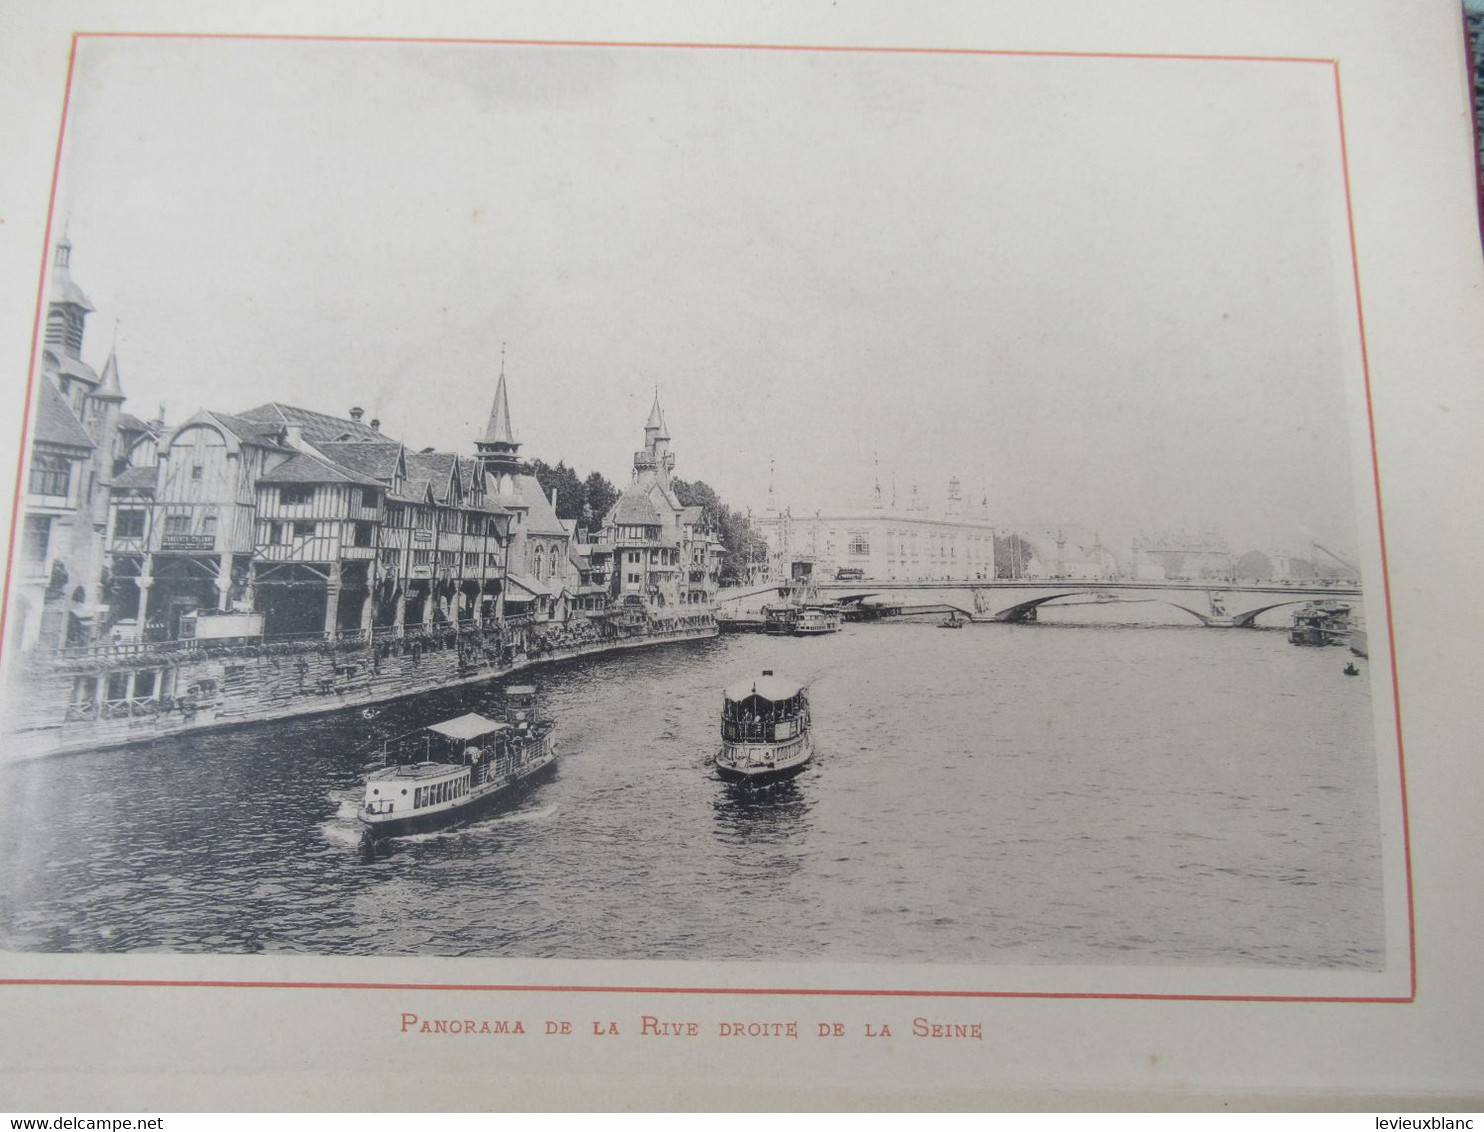 Guide photographique/PARIS/Exposition 1900/ Reproductions photographiques/d'époque/1900                           PGC438